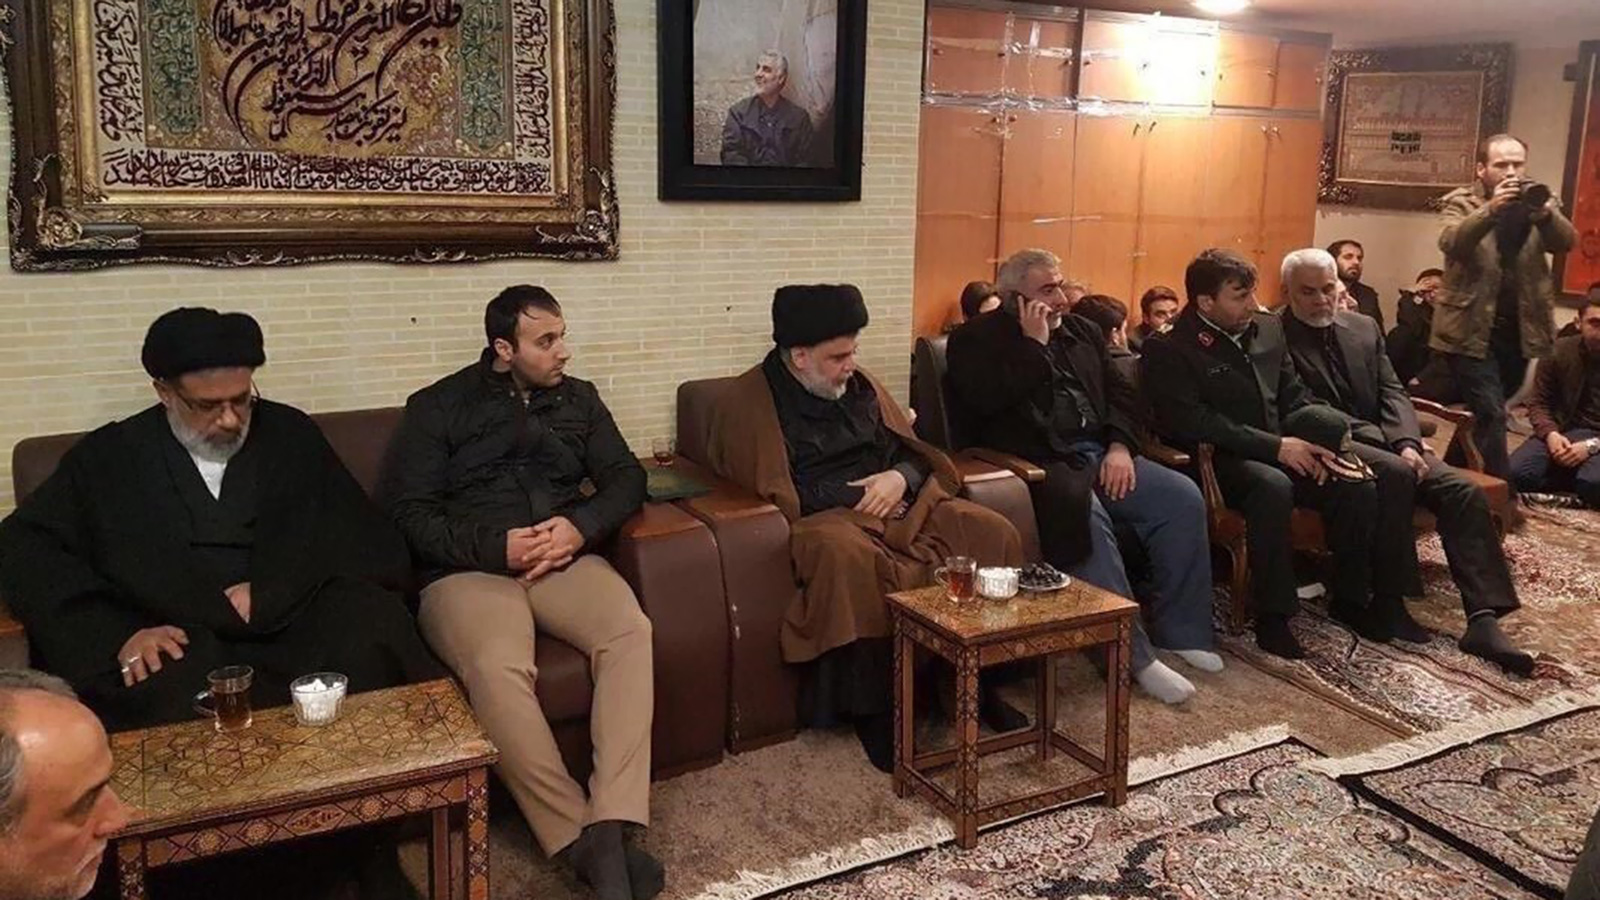 ‪زعيم التيار الصدري العراقي يقدم العزاء لعائلة سليماني‬ (الصحافة الإيرانية)